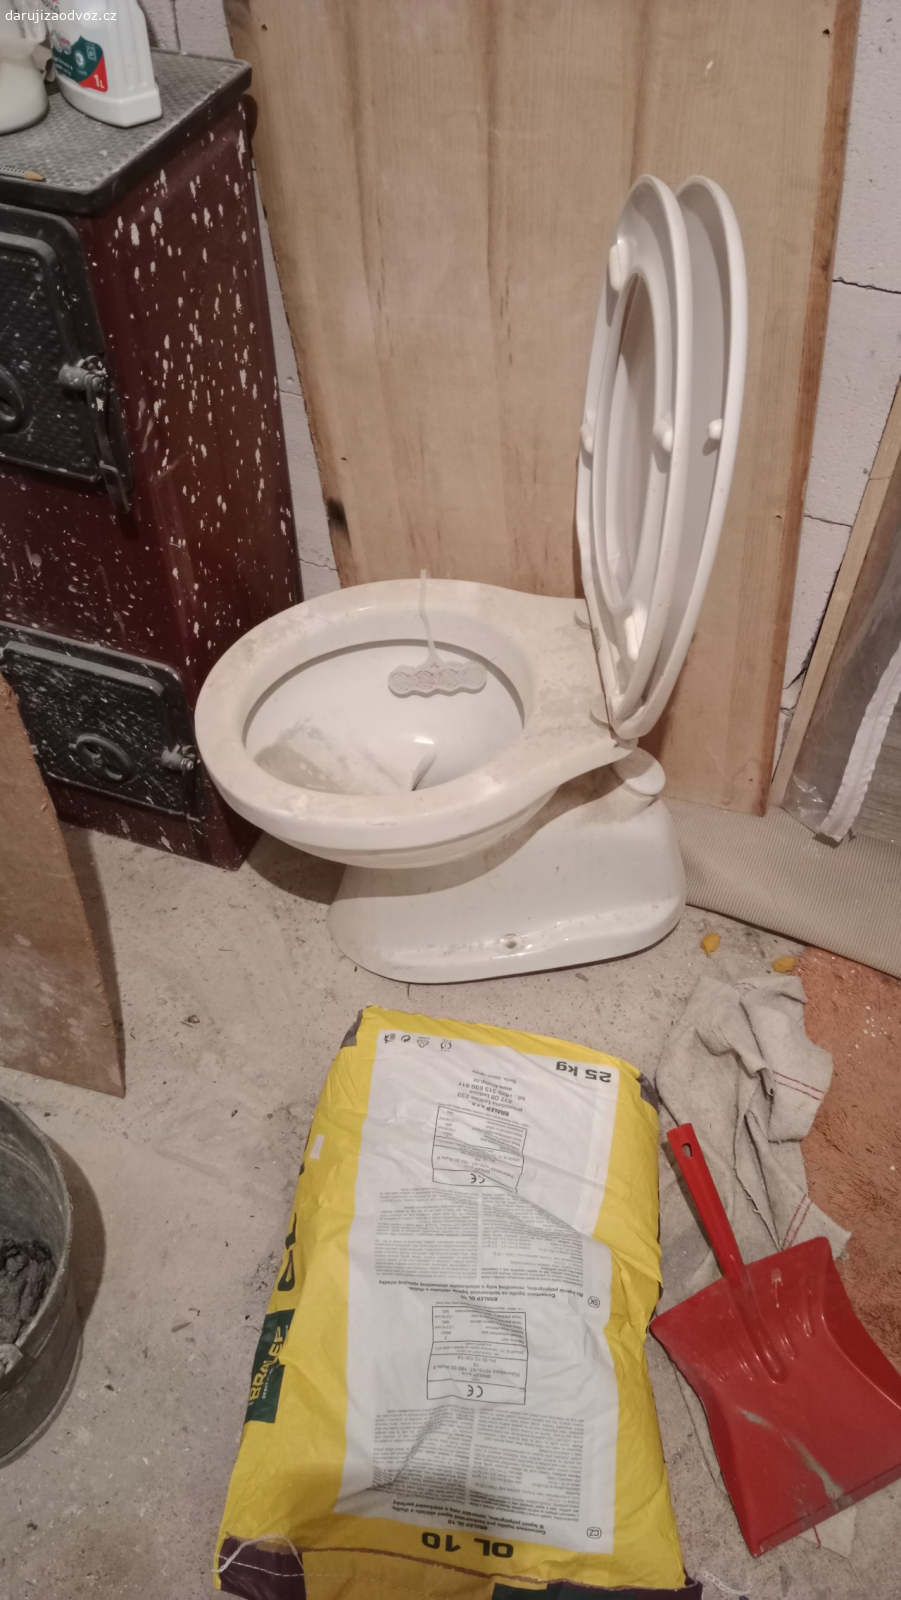 toaleta. záchod s vývodem odpadu do podlahy. možno i se splachovací nádržkou za WC závěsnou na zeď. používané ale po rekonstrukci bytu již nemá uplatnění.